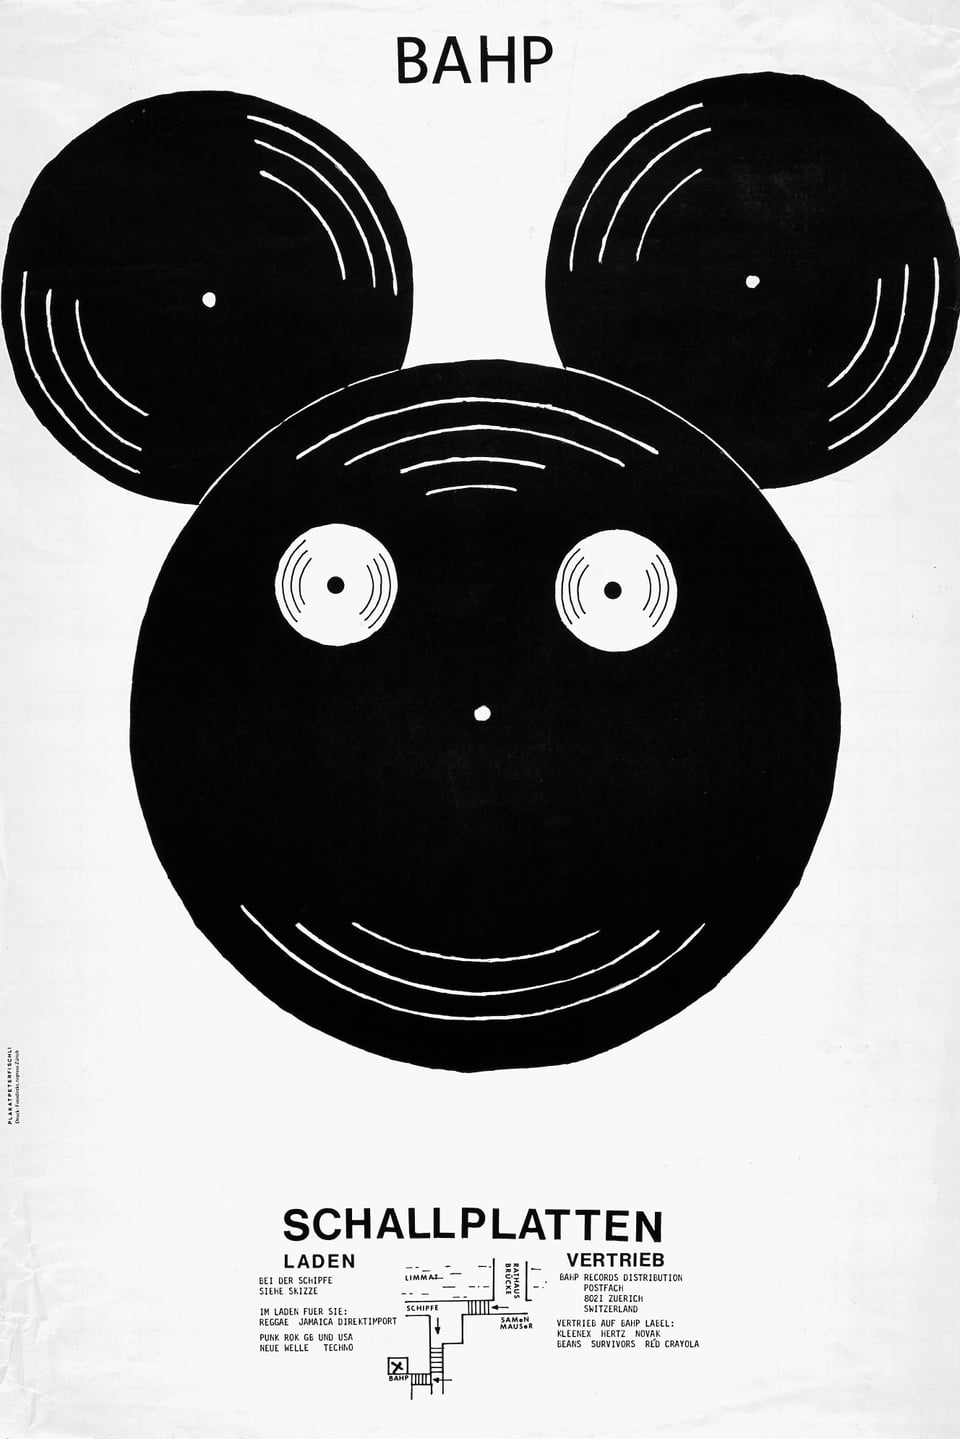 Einfach Schwarzweis-Grafik: Vier schwarze Schalplatten bilden einen Mickey-Maus-Kopf.